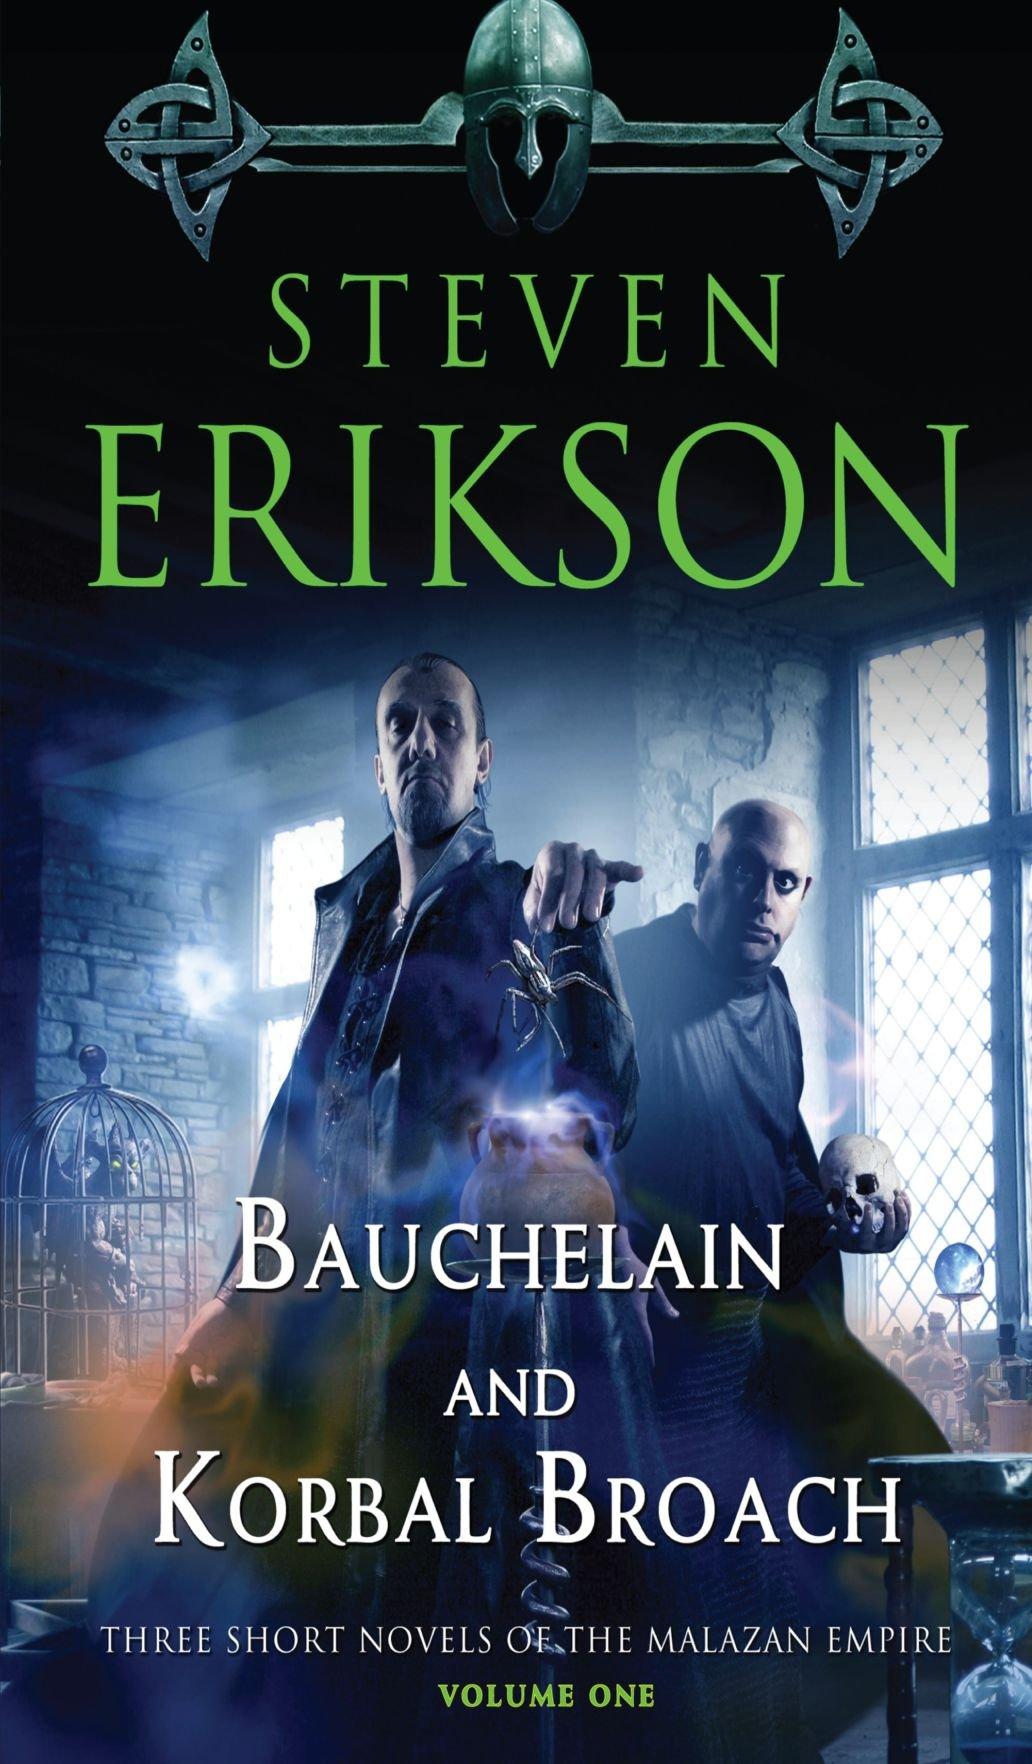 Bauchelain and Korbal Broach By:Erikson, Steven Eur:9,74 Ден2:899